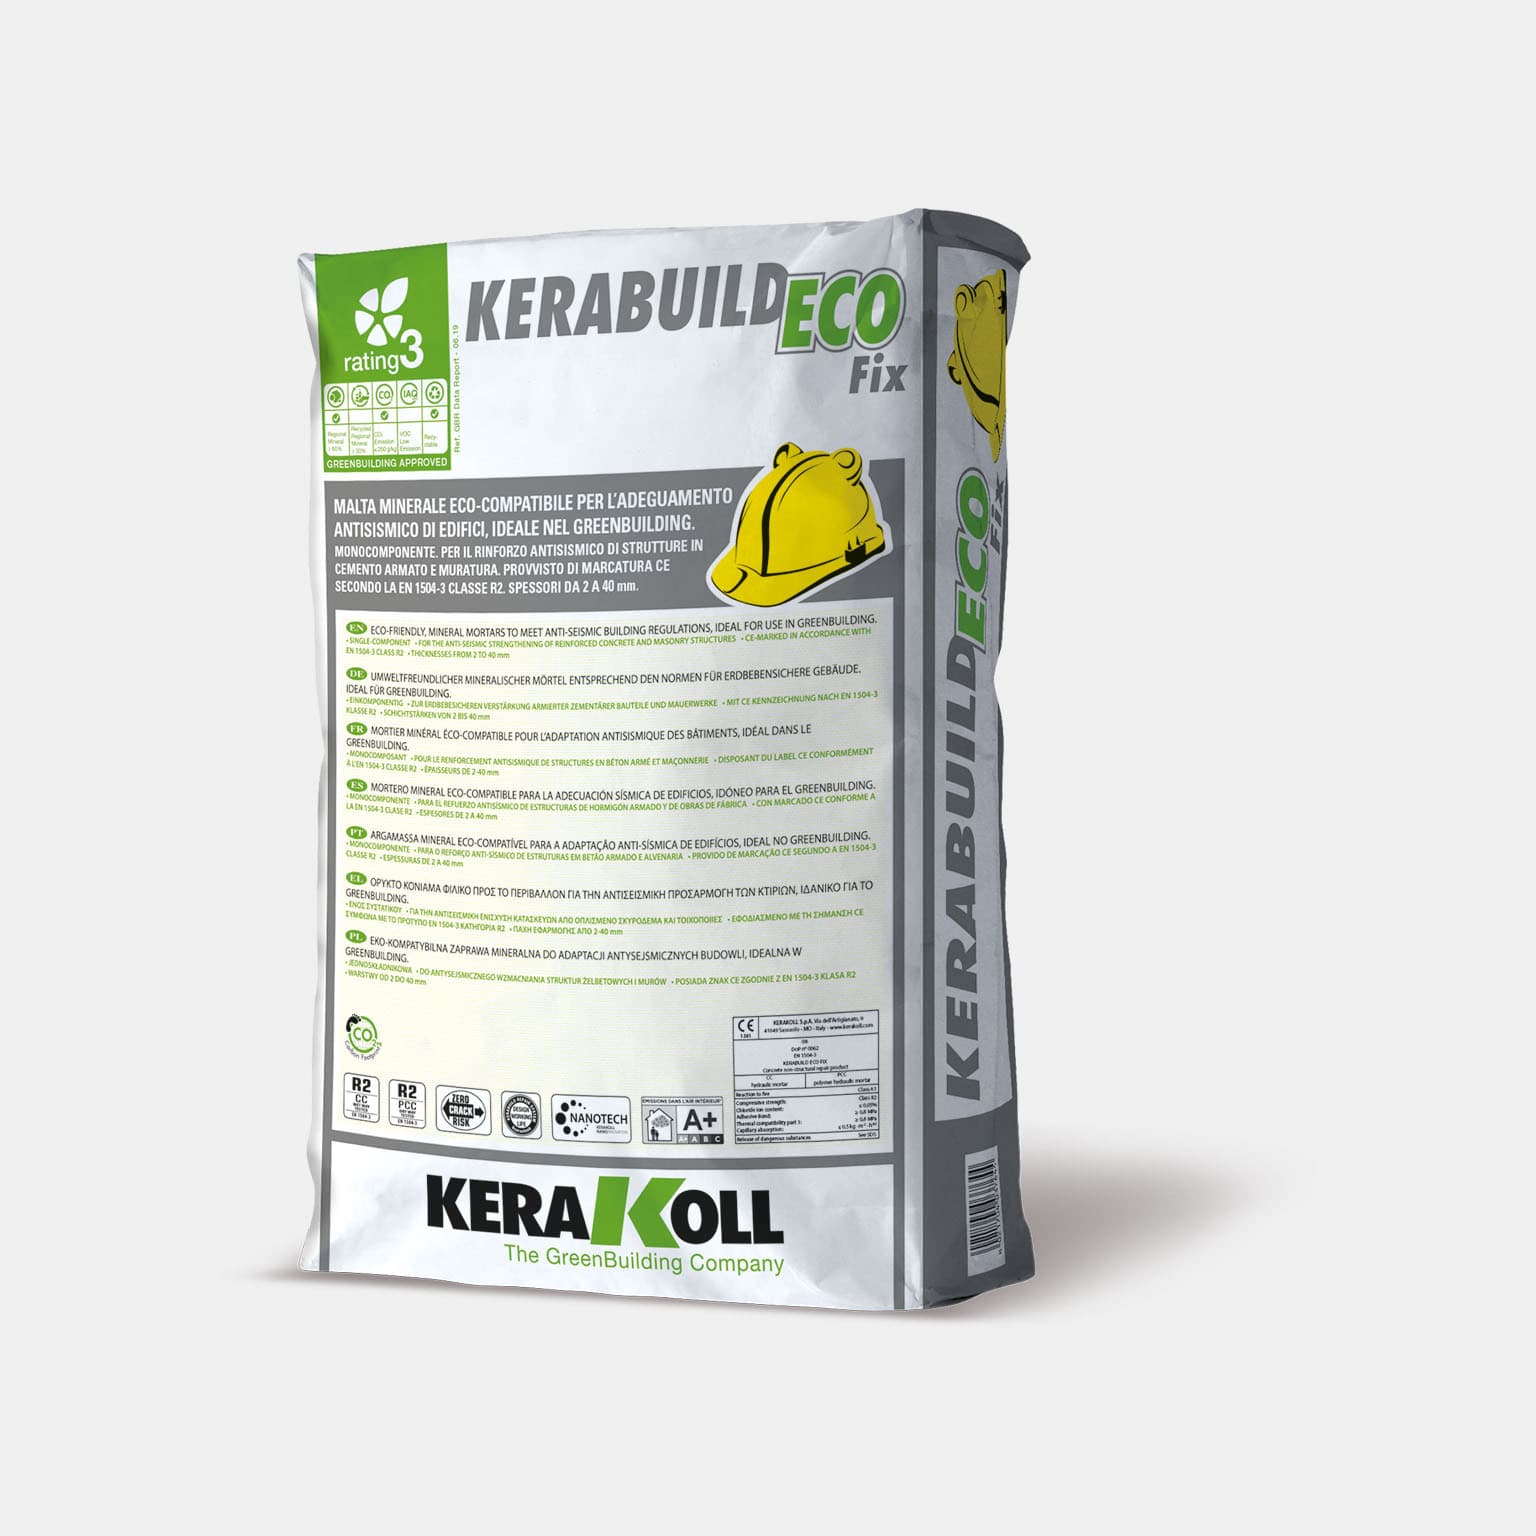 Kerakoll Kerabuild Eco Fix ásványi eredetû öko‑kompatibilis habarcs az épületek földrengésállóságának javításához, ideális a GreenBuildinghez.